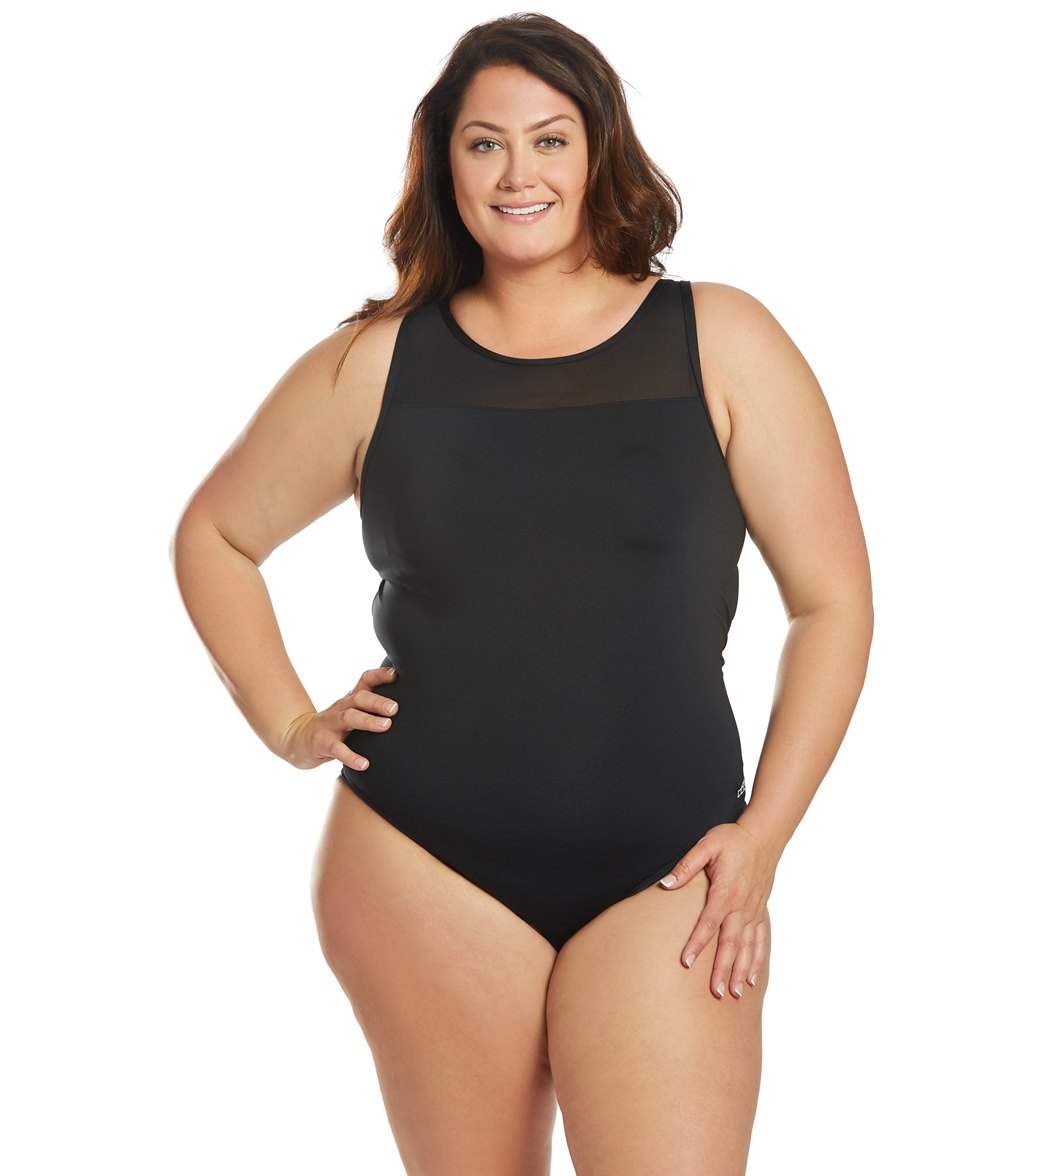 Dolfin Women's Plus Size Aquashape Solid Power Mesh Chlorine Resistant One Piece Swimsuit - Black 16 - Swimoutlet.com